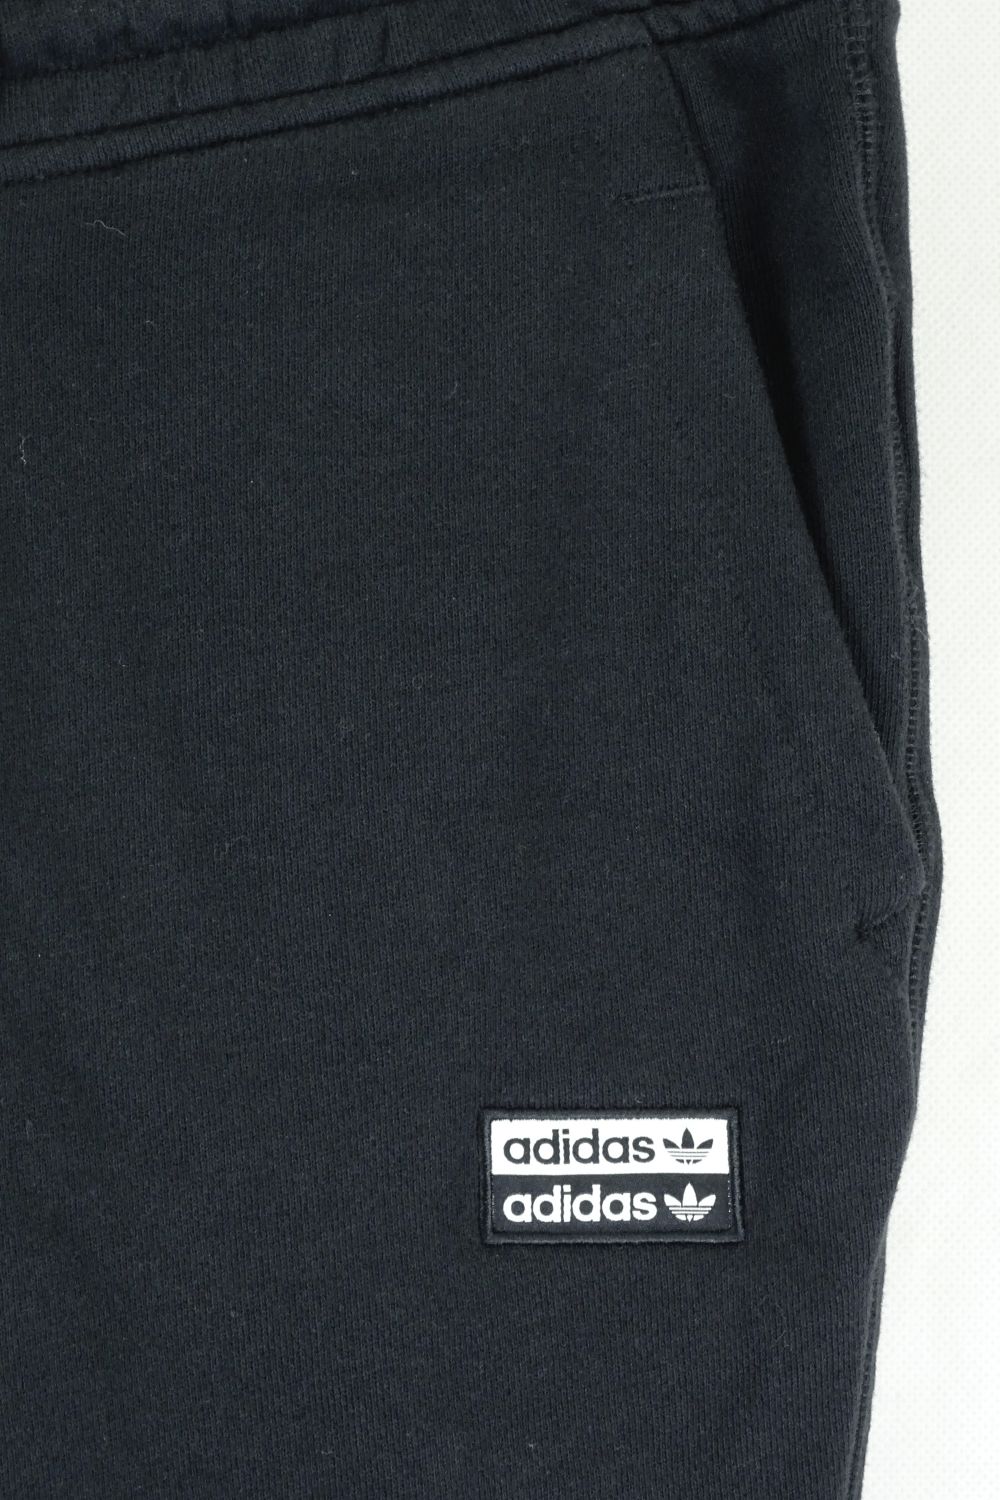 Adidas Black Tracksuit Pants 14